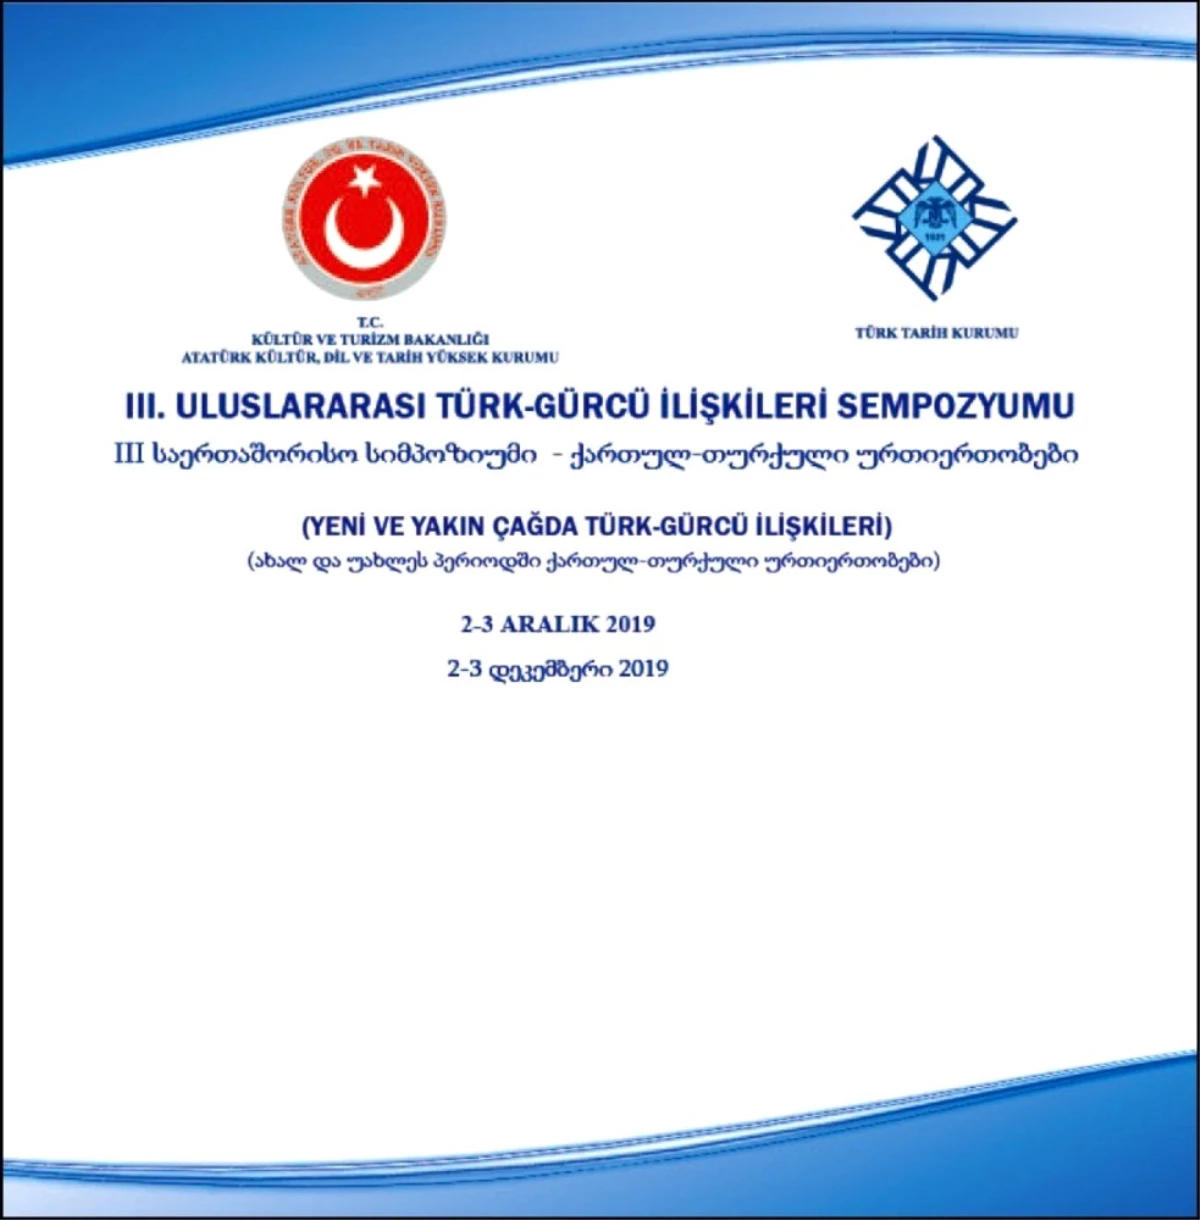 Uluslararası Türk-Gürcü İlişkileri Sempozyumu düzenlenecek